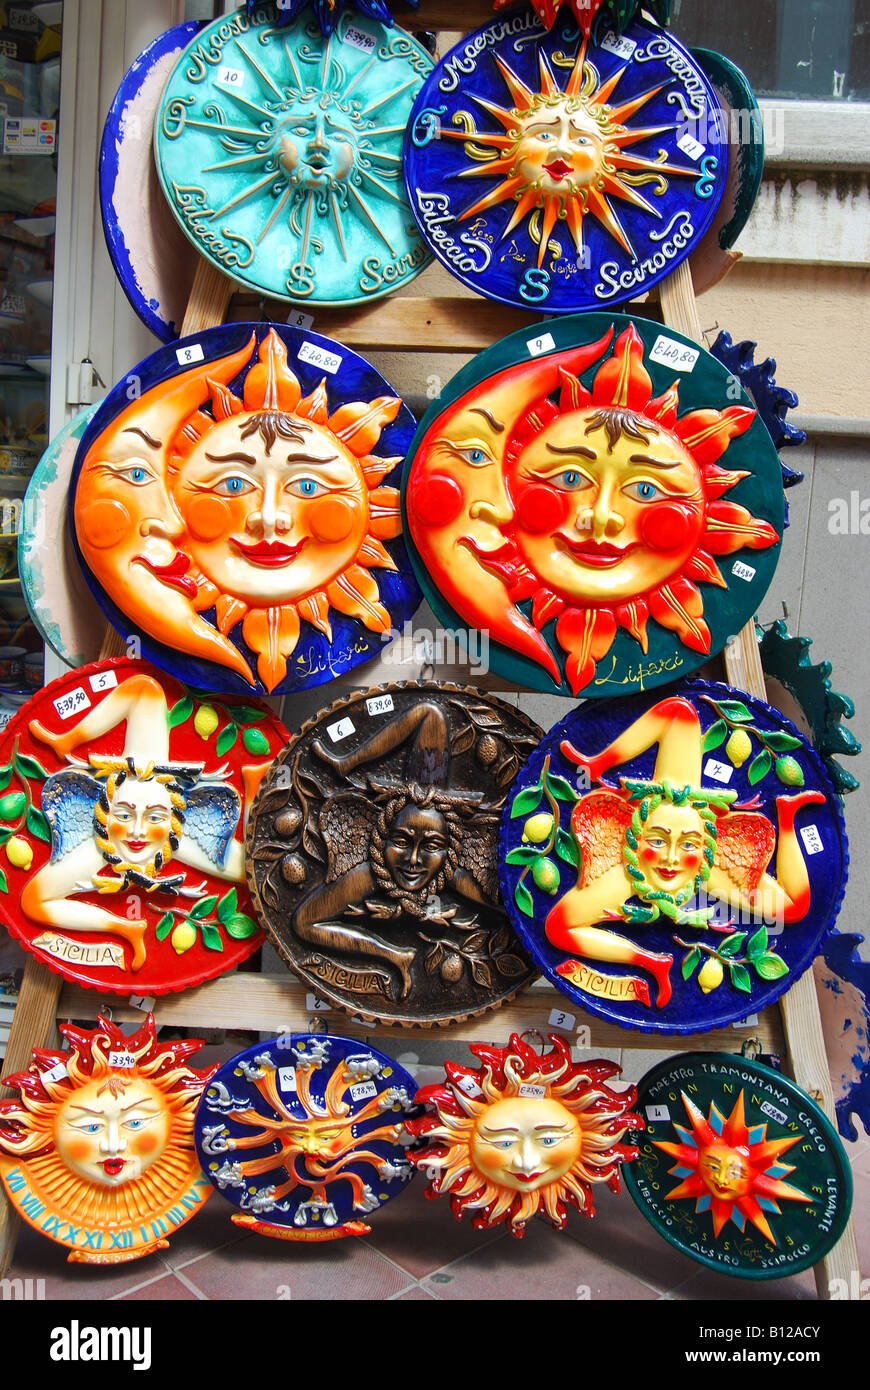 Sole in ceramica figure al di fuori del negozio di souvenir, Lipari, Isola di Lipari, Provincia di Messina, Sicilia, Italia Foto Stock